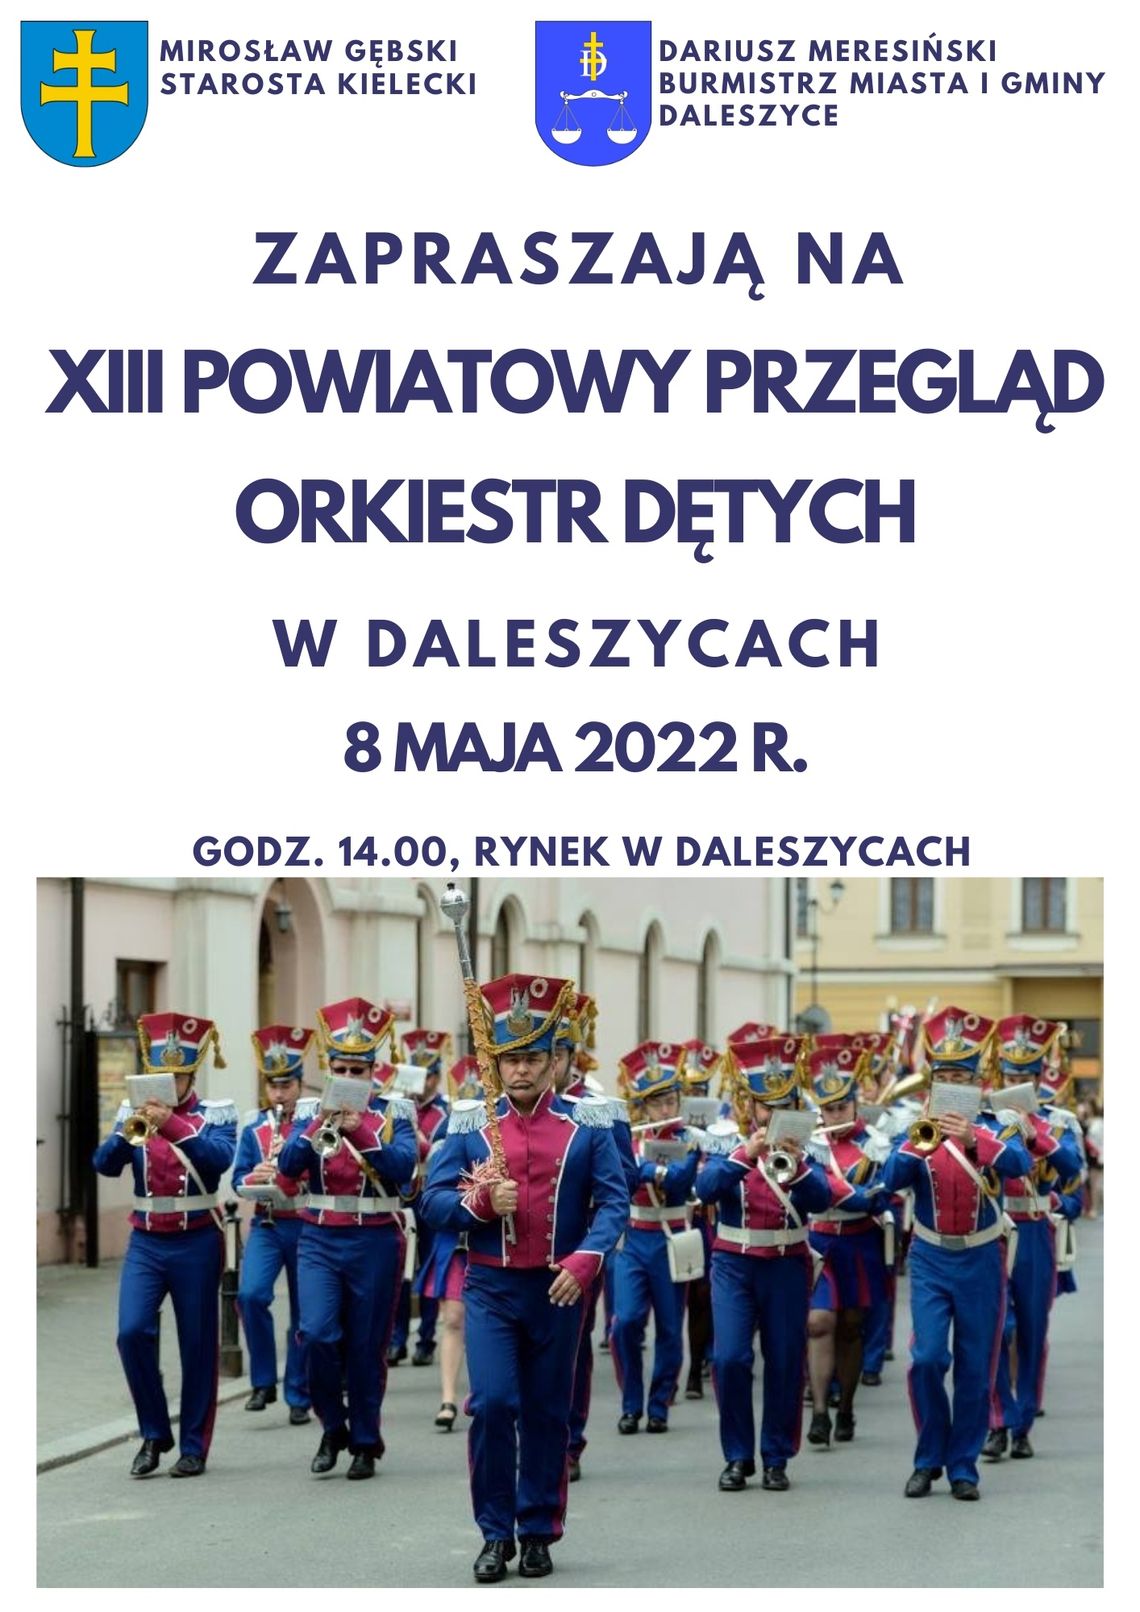 Orkiestry dęte zagrają w Daleszycach